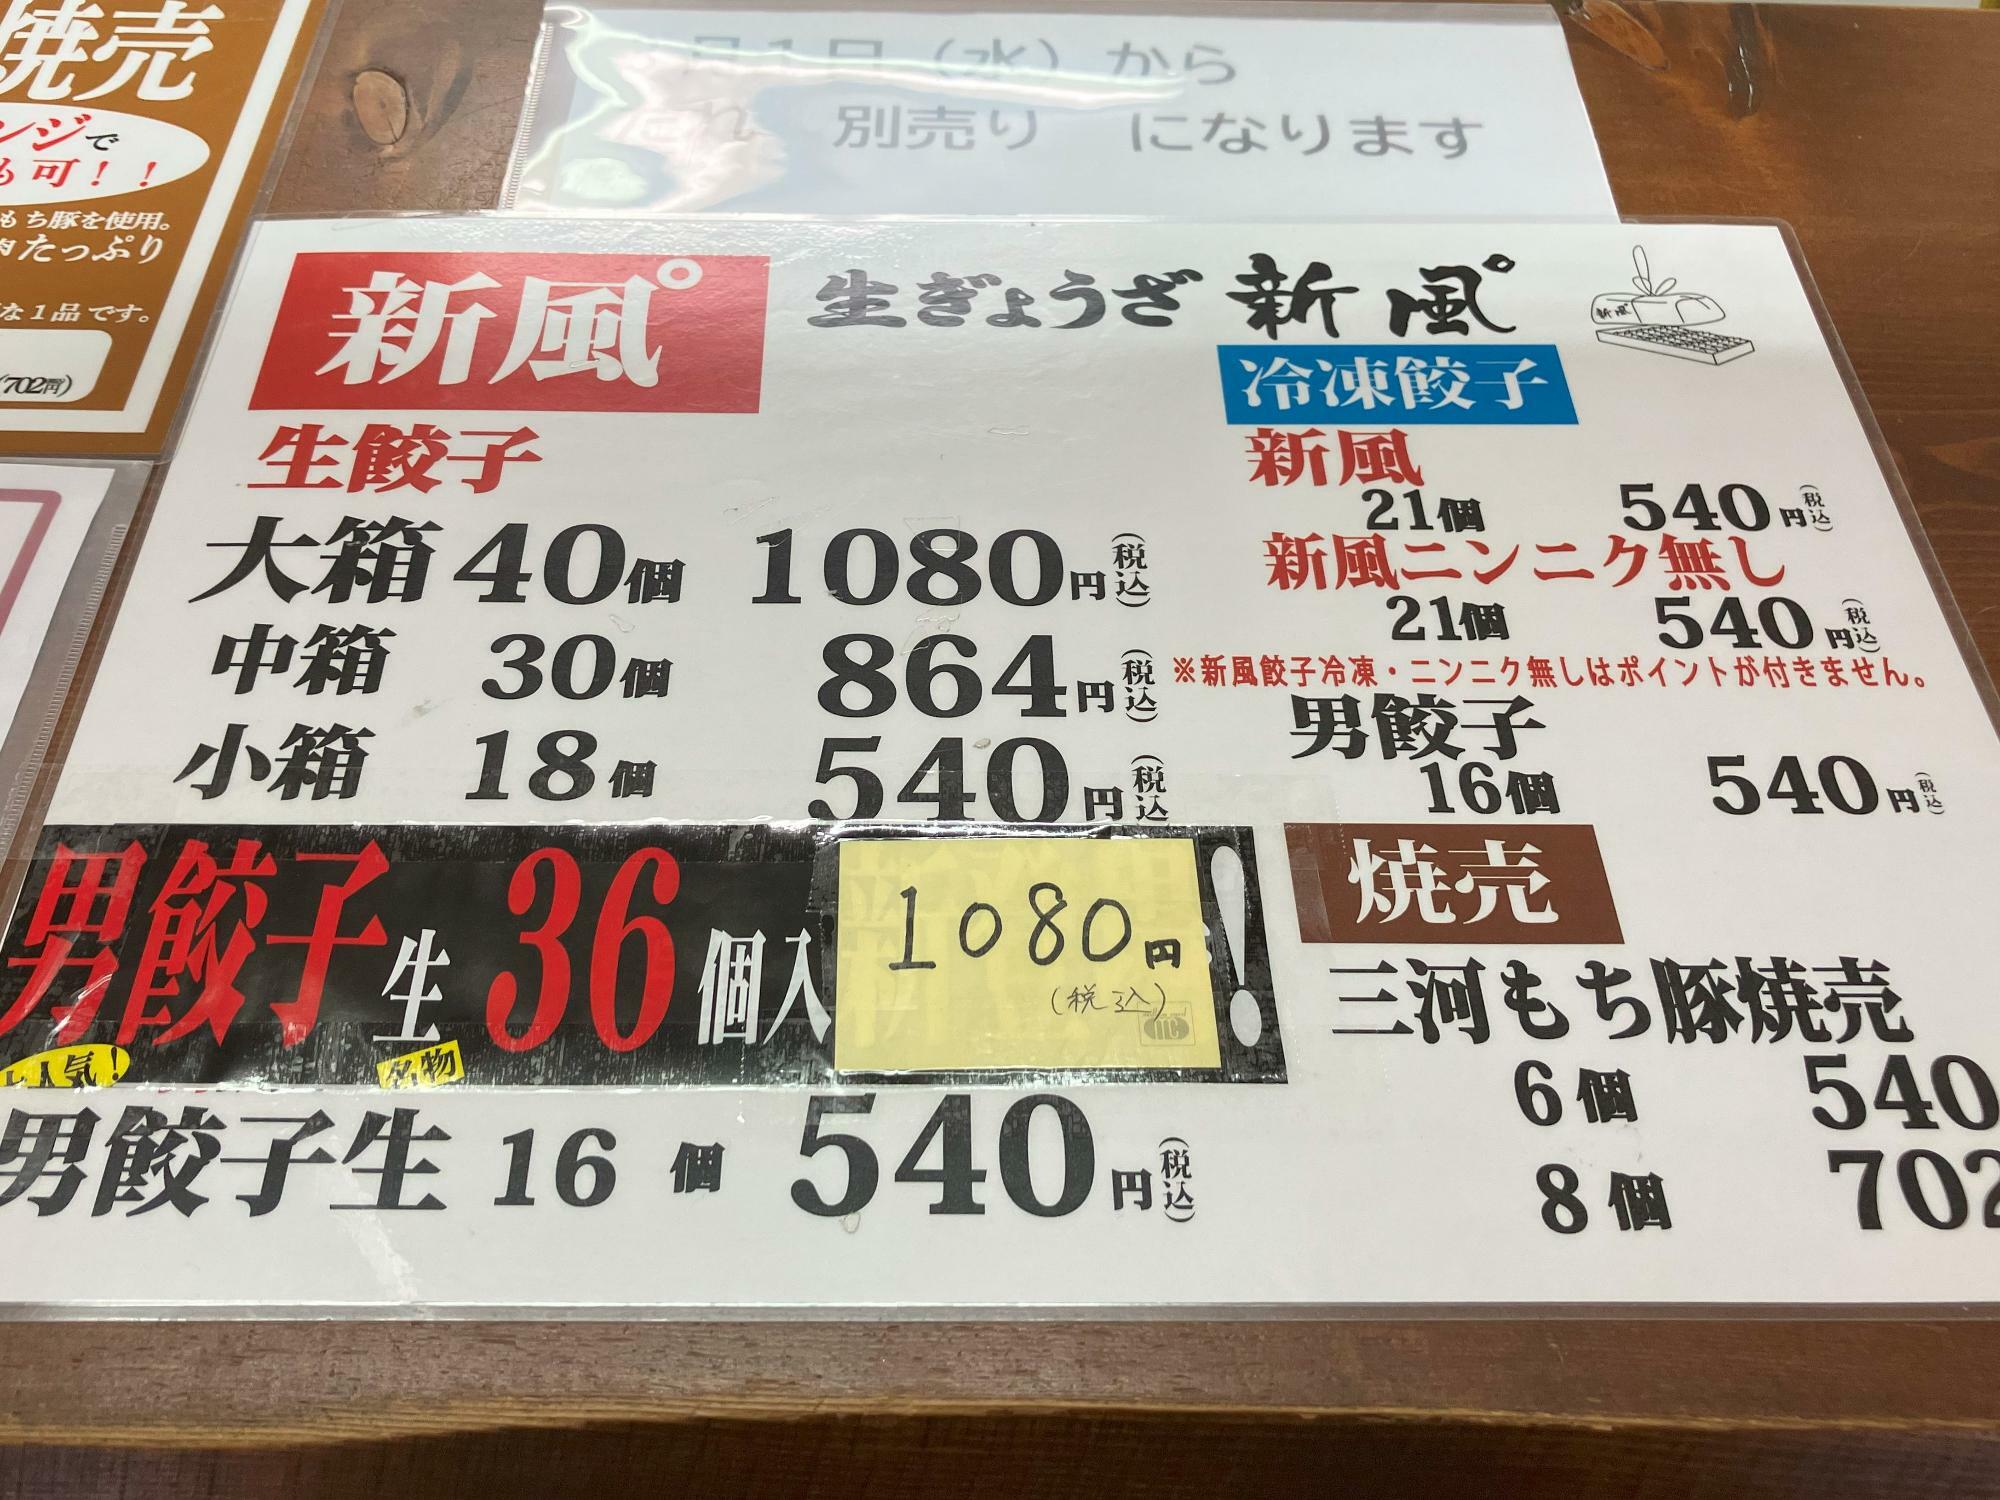 特製たれは1個10円で販売されています